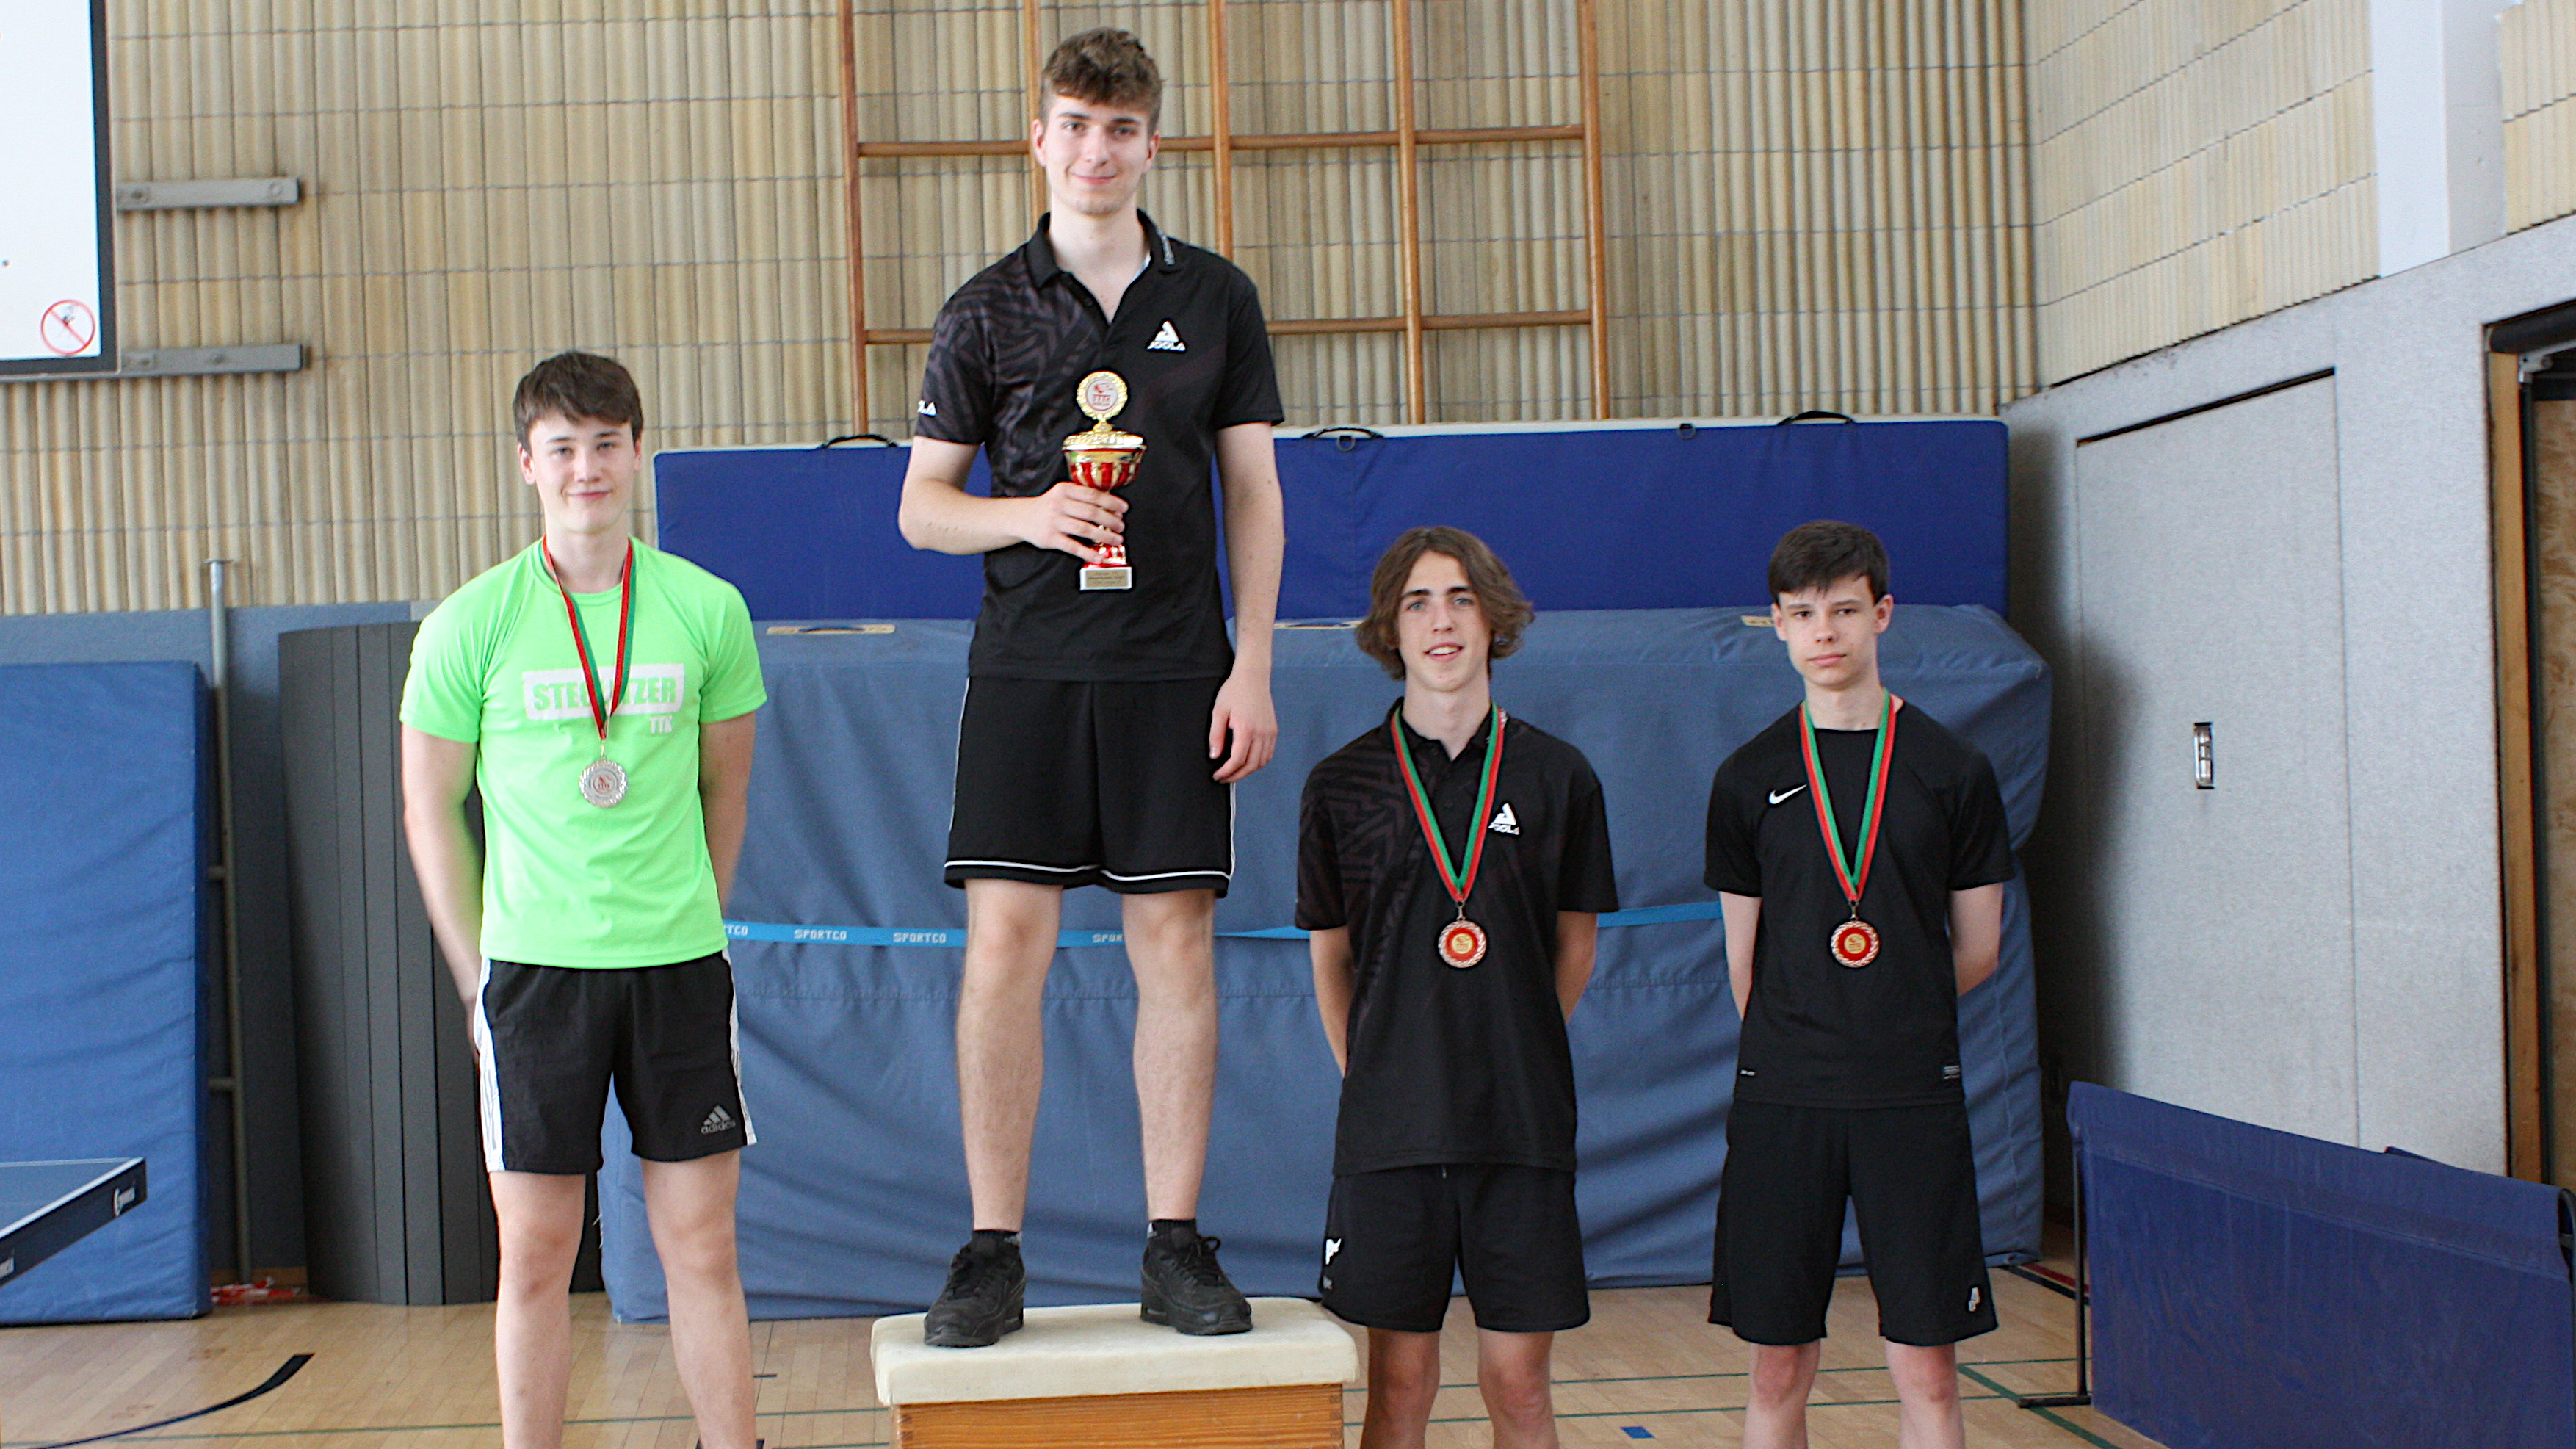 Siegerehrung Jungen U19: 1. Platz Timo; 2. Platz Fionn (links); 3. Platz Oscar(2. v. r.); 4. Platz Mads (rechts)